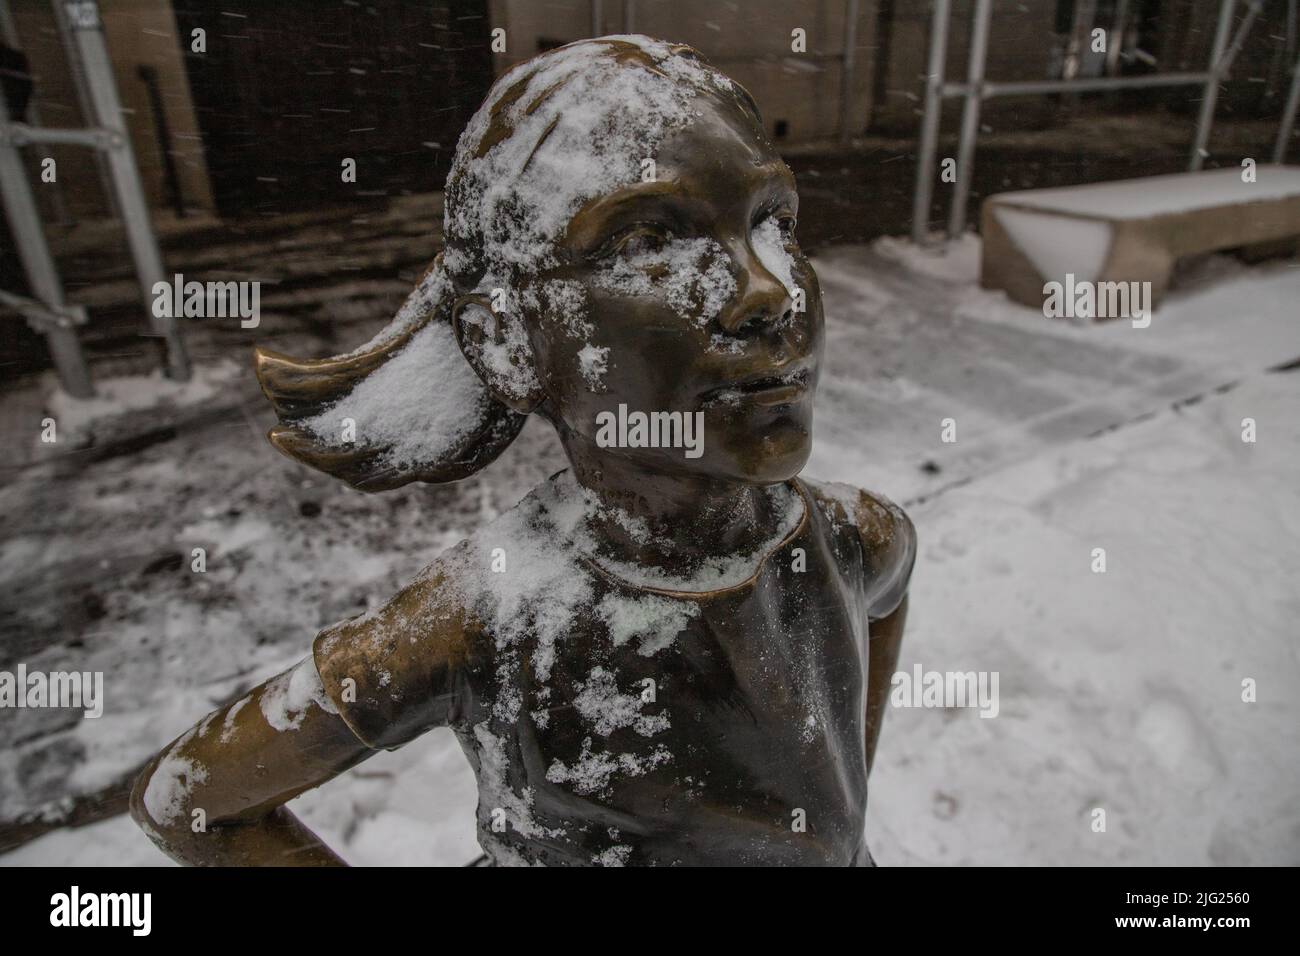 NEW YORK, NY – 29. Januar 2022: „Fearless Girl“, eine Statue von Kristen Visbal, wird während eines Wintersturms auf der Broad Street in New York City gesehen. Stockfoto